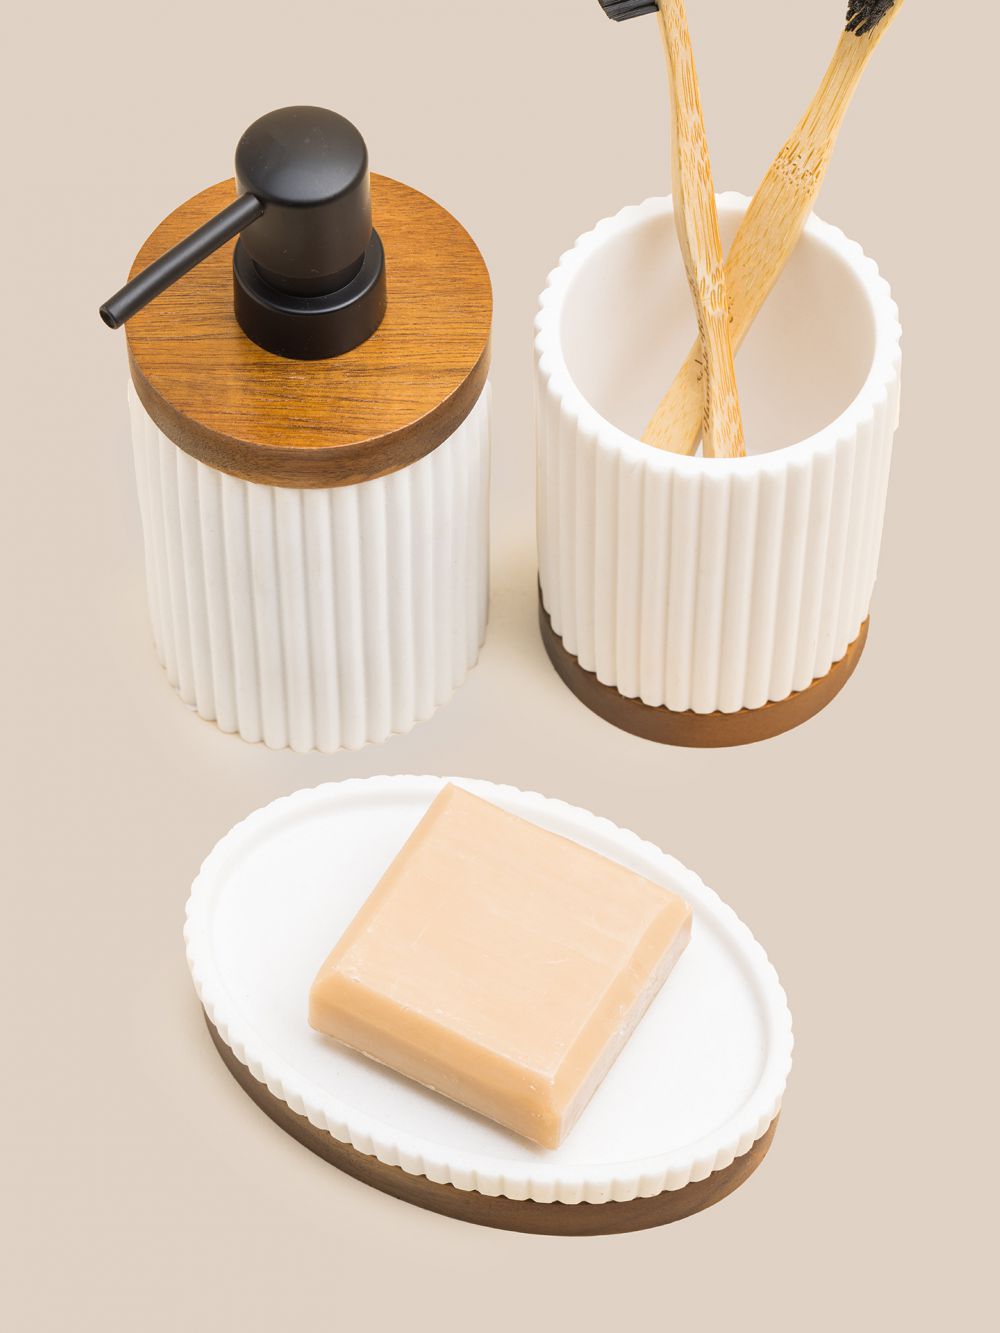 כלי לסבון מוצק לבן בשילוב עץ